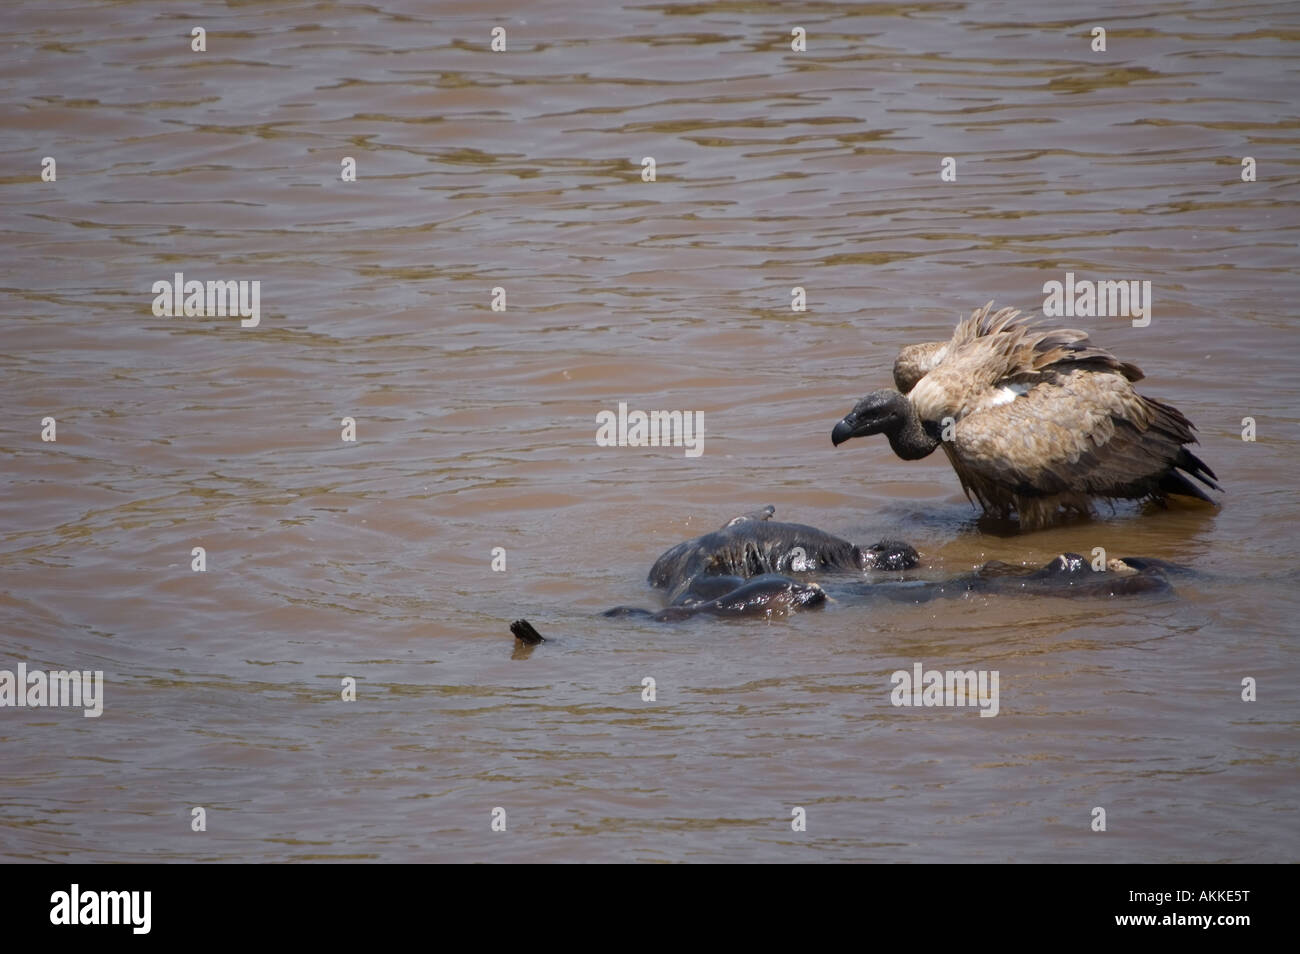 Un buitre compactación fuera de los restos de un ñu azul durante la migración anual en Kenia Foto de stock